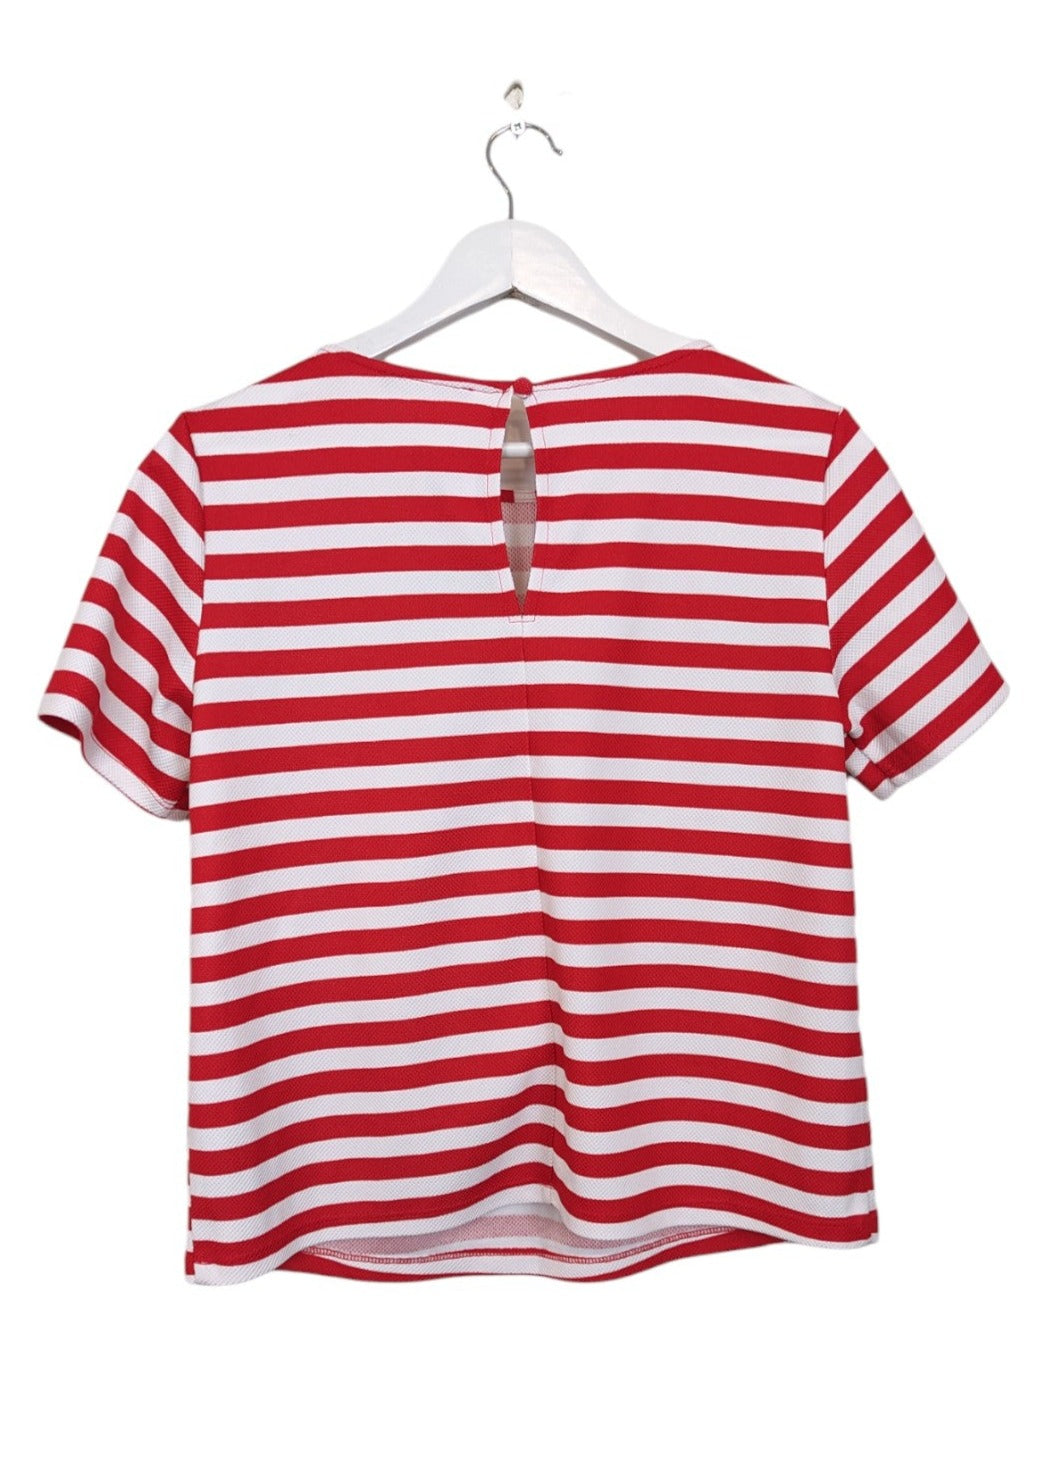 Ριγέ, Γυναικεία, Κοντομάνικη Μπλούζα GEORGE σε Κόκκινο-Λευκό χρώμα (Medium)